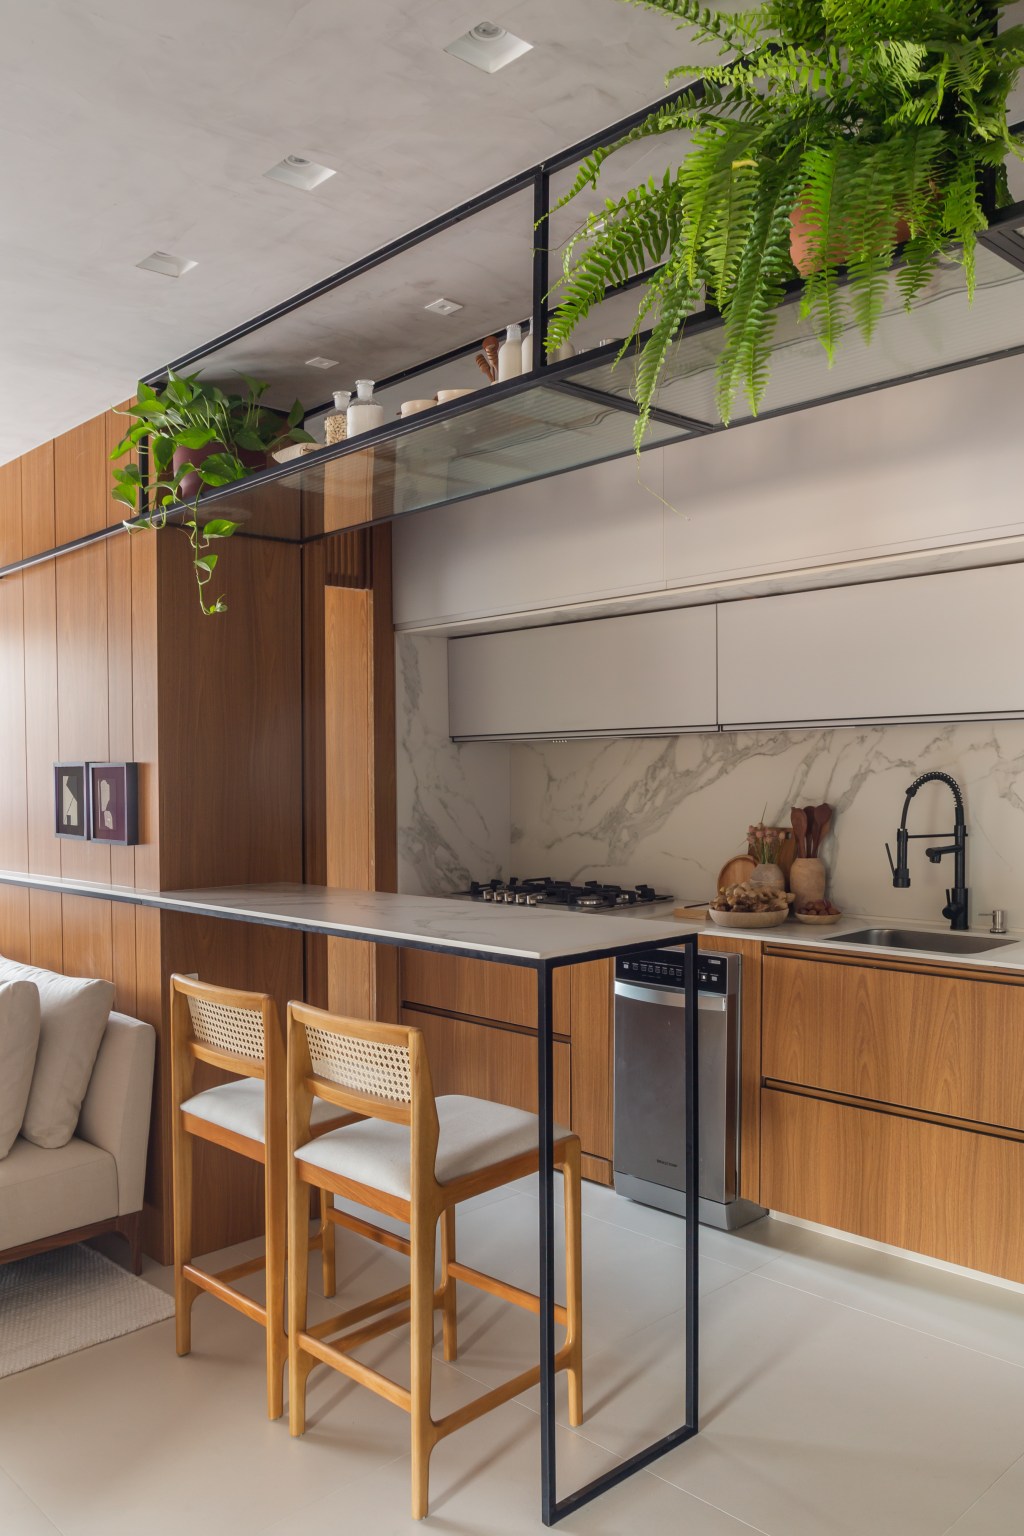 Apê de 100 m2 prático décor contemporâneo toques industriais arquiteto Rafael Ramos sala estar cozinha bancada banco madeira